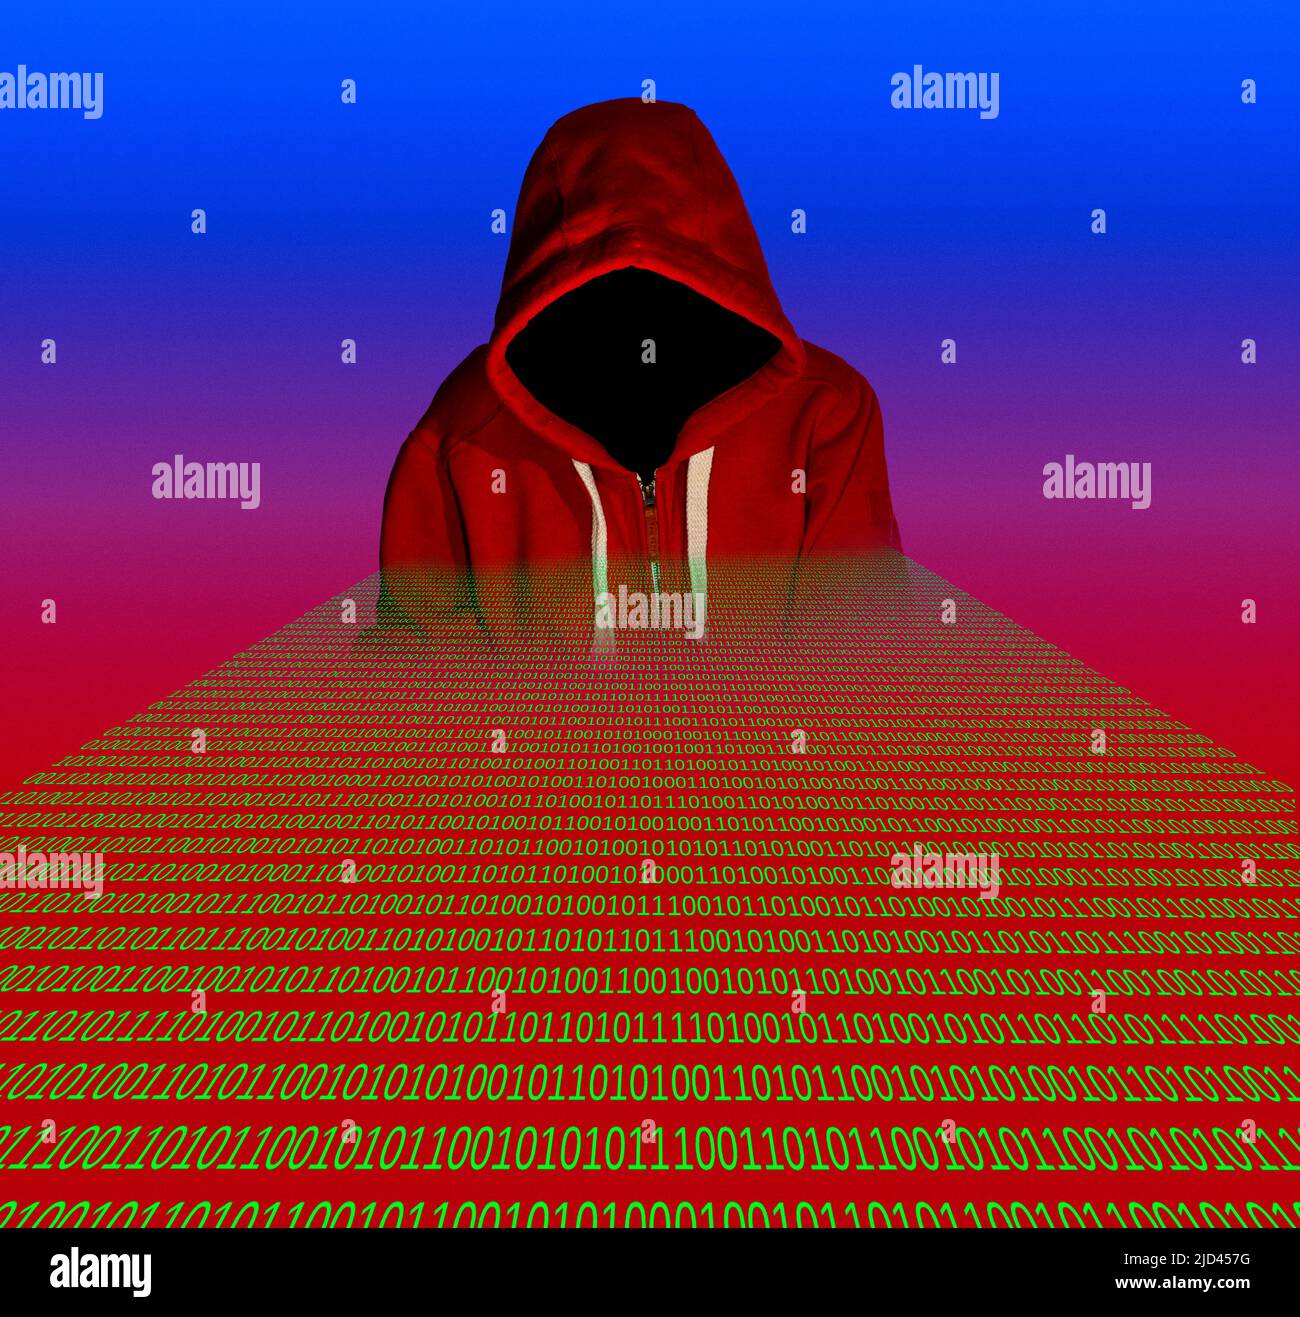 Hacking, illustration Stock Photo